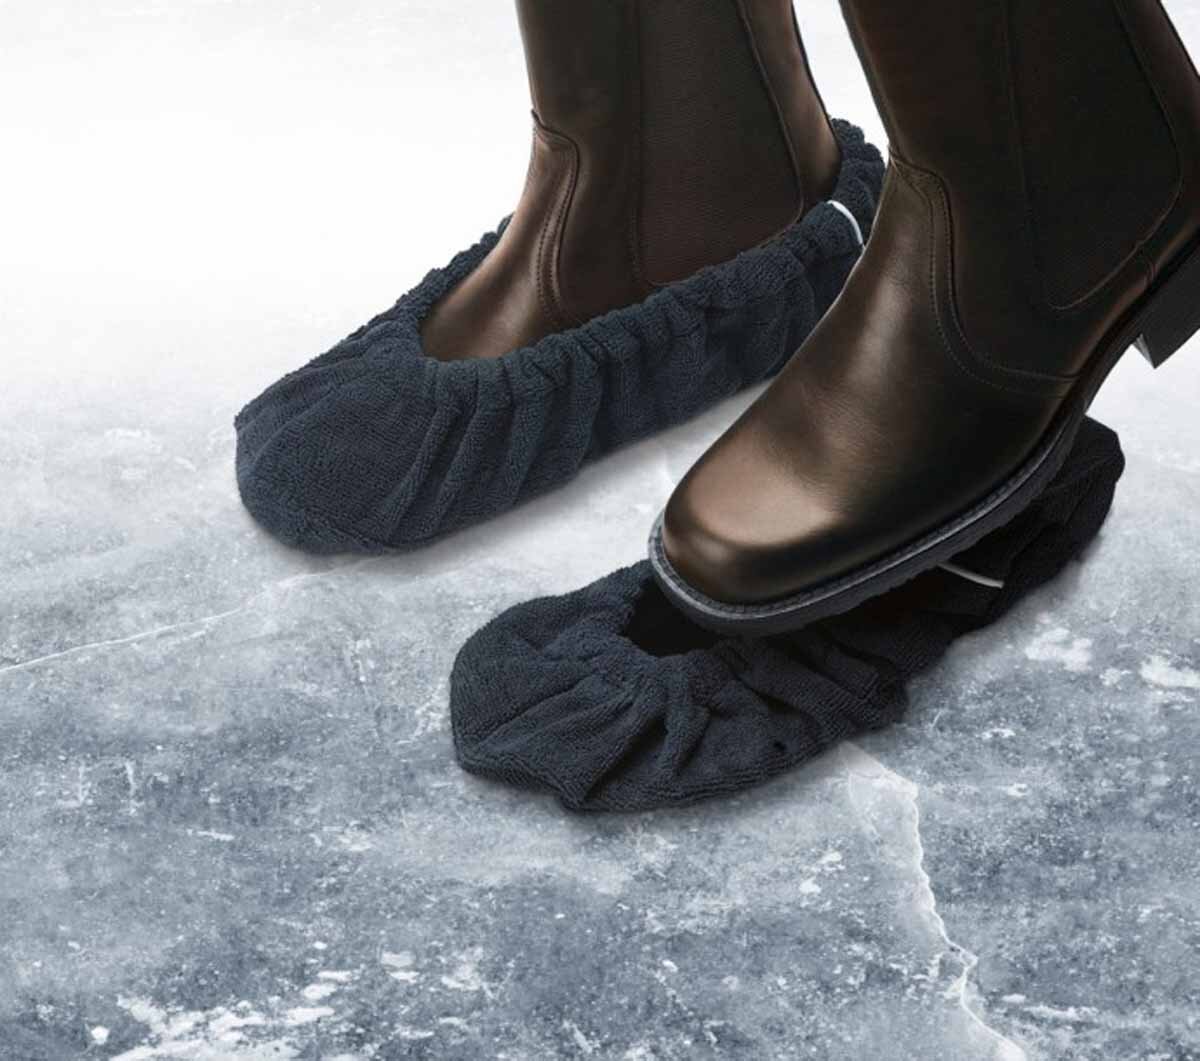 Ботинки без подошвы. Скользкие зимние ботинки. Нескользящая обувь для зимы. Сапожки на нескользящей подошве. Подошва для зимней обуви.